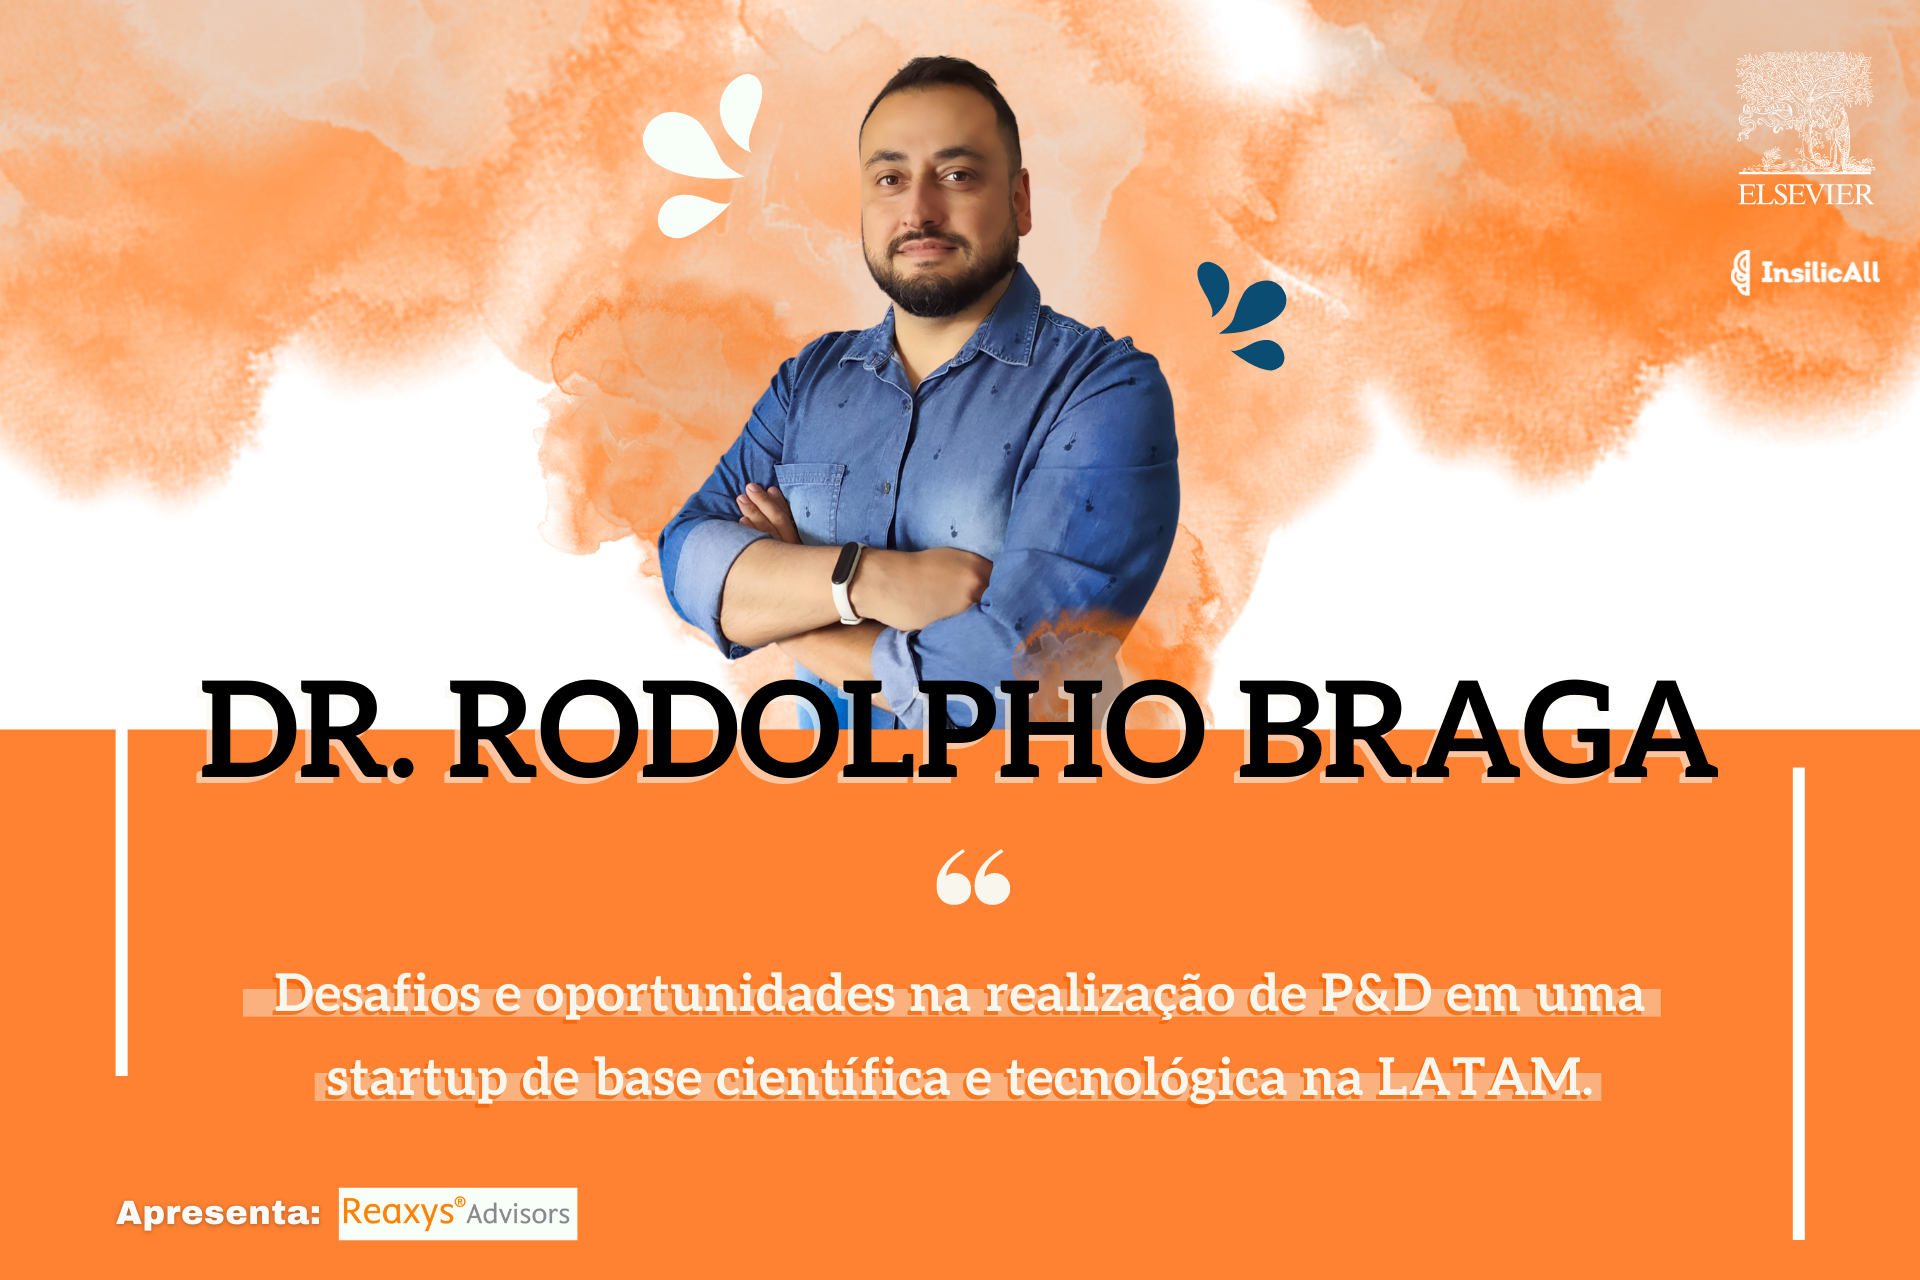 Elsevier convida Dr. Rodolpho Braga